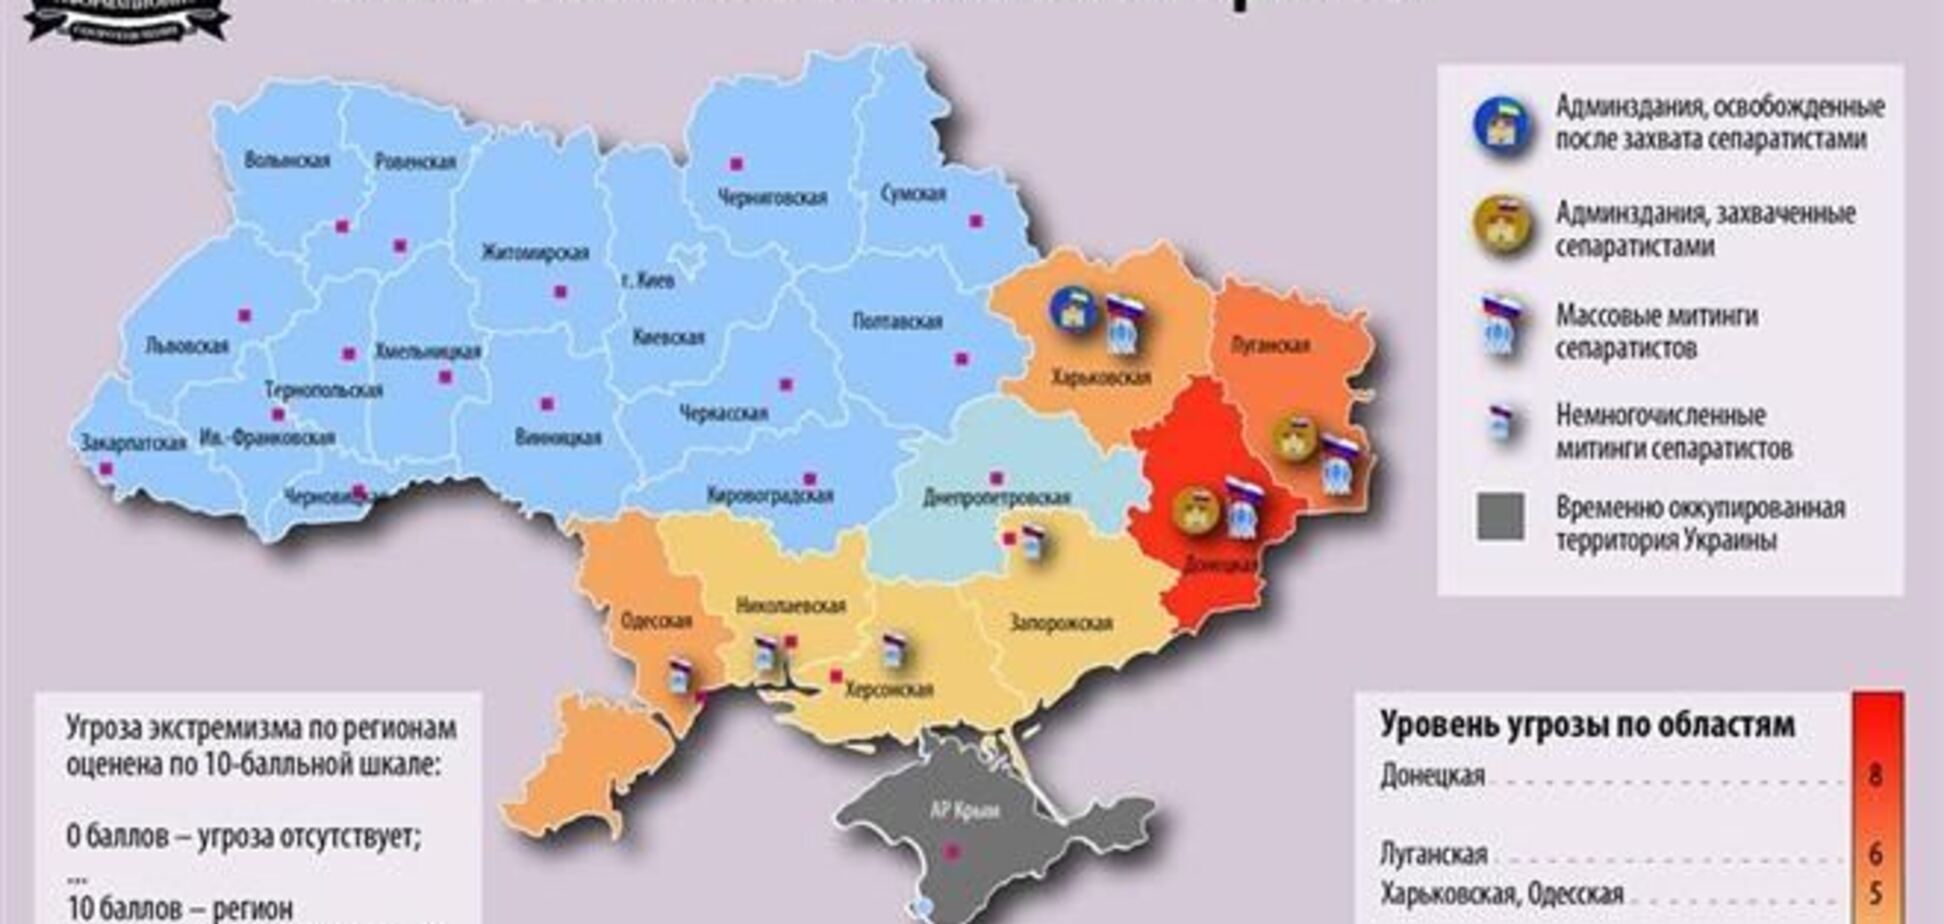 На Донеччині - найвища загроза екстремізму, на Дніпропетровщині - найнижча. Інфографіка